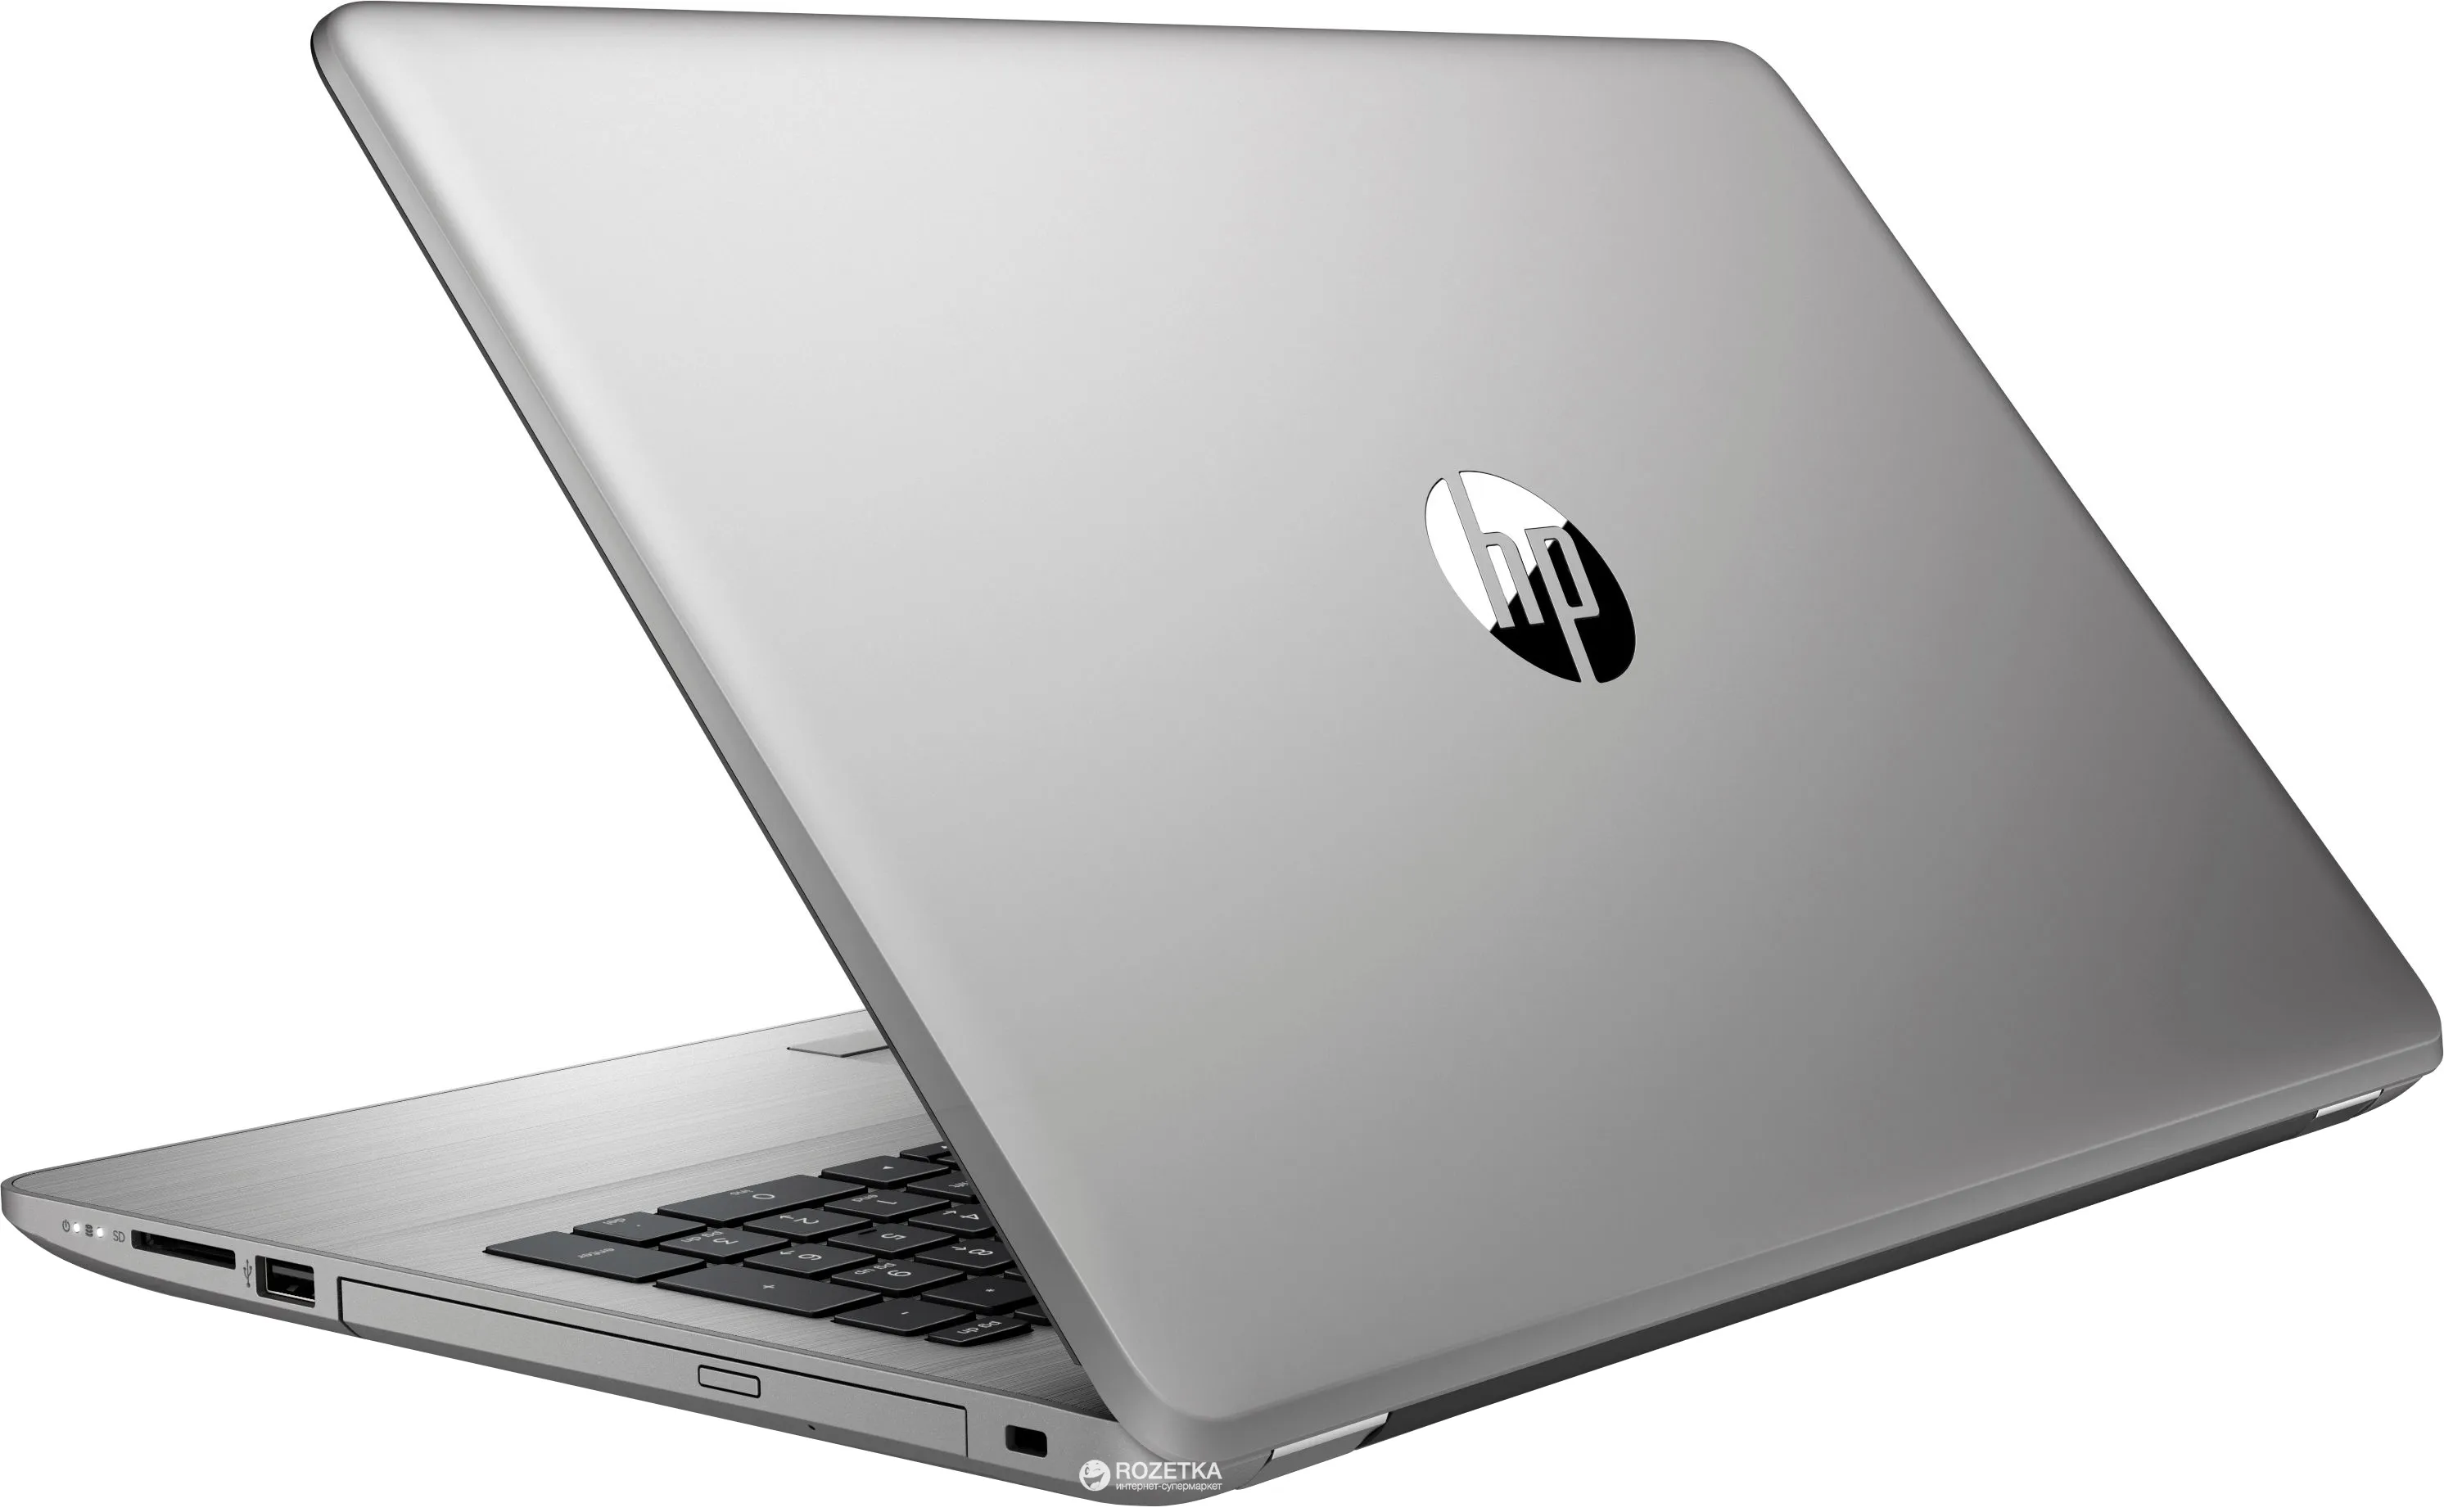 Ноутбук HP 250 G5 /Intel i3-5005U/4 GB DDR3/ 500GB HDD /15.6" HD LED/2GB AMD Radeon R5 M430/ DVD / RUS#4